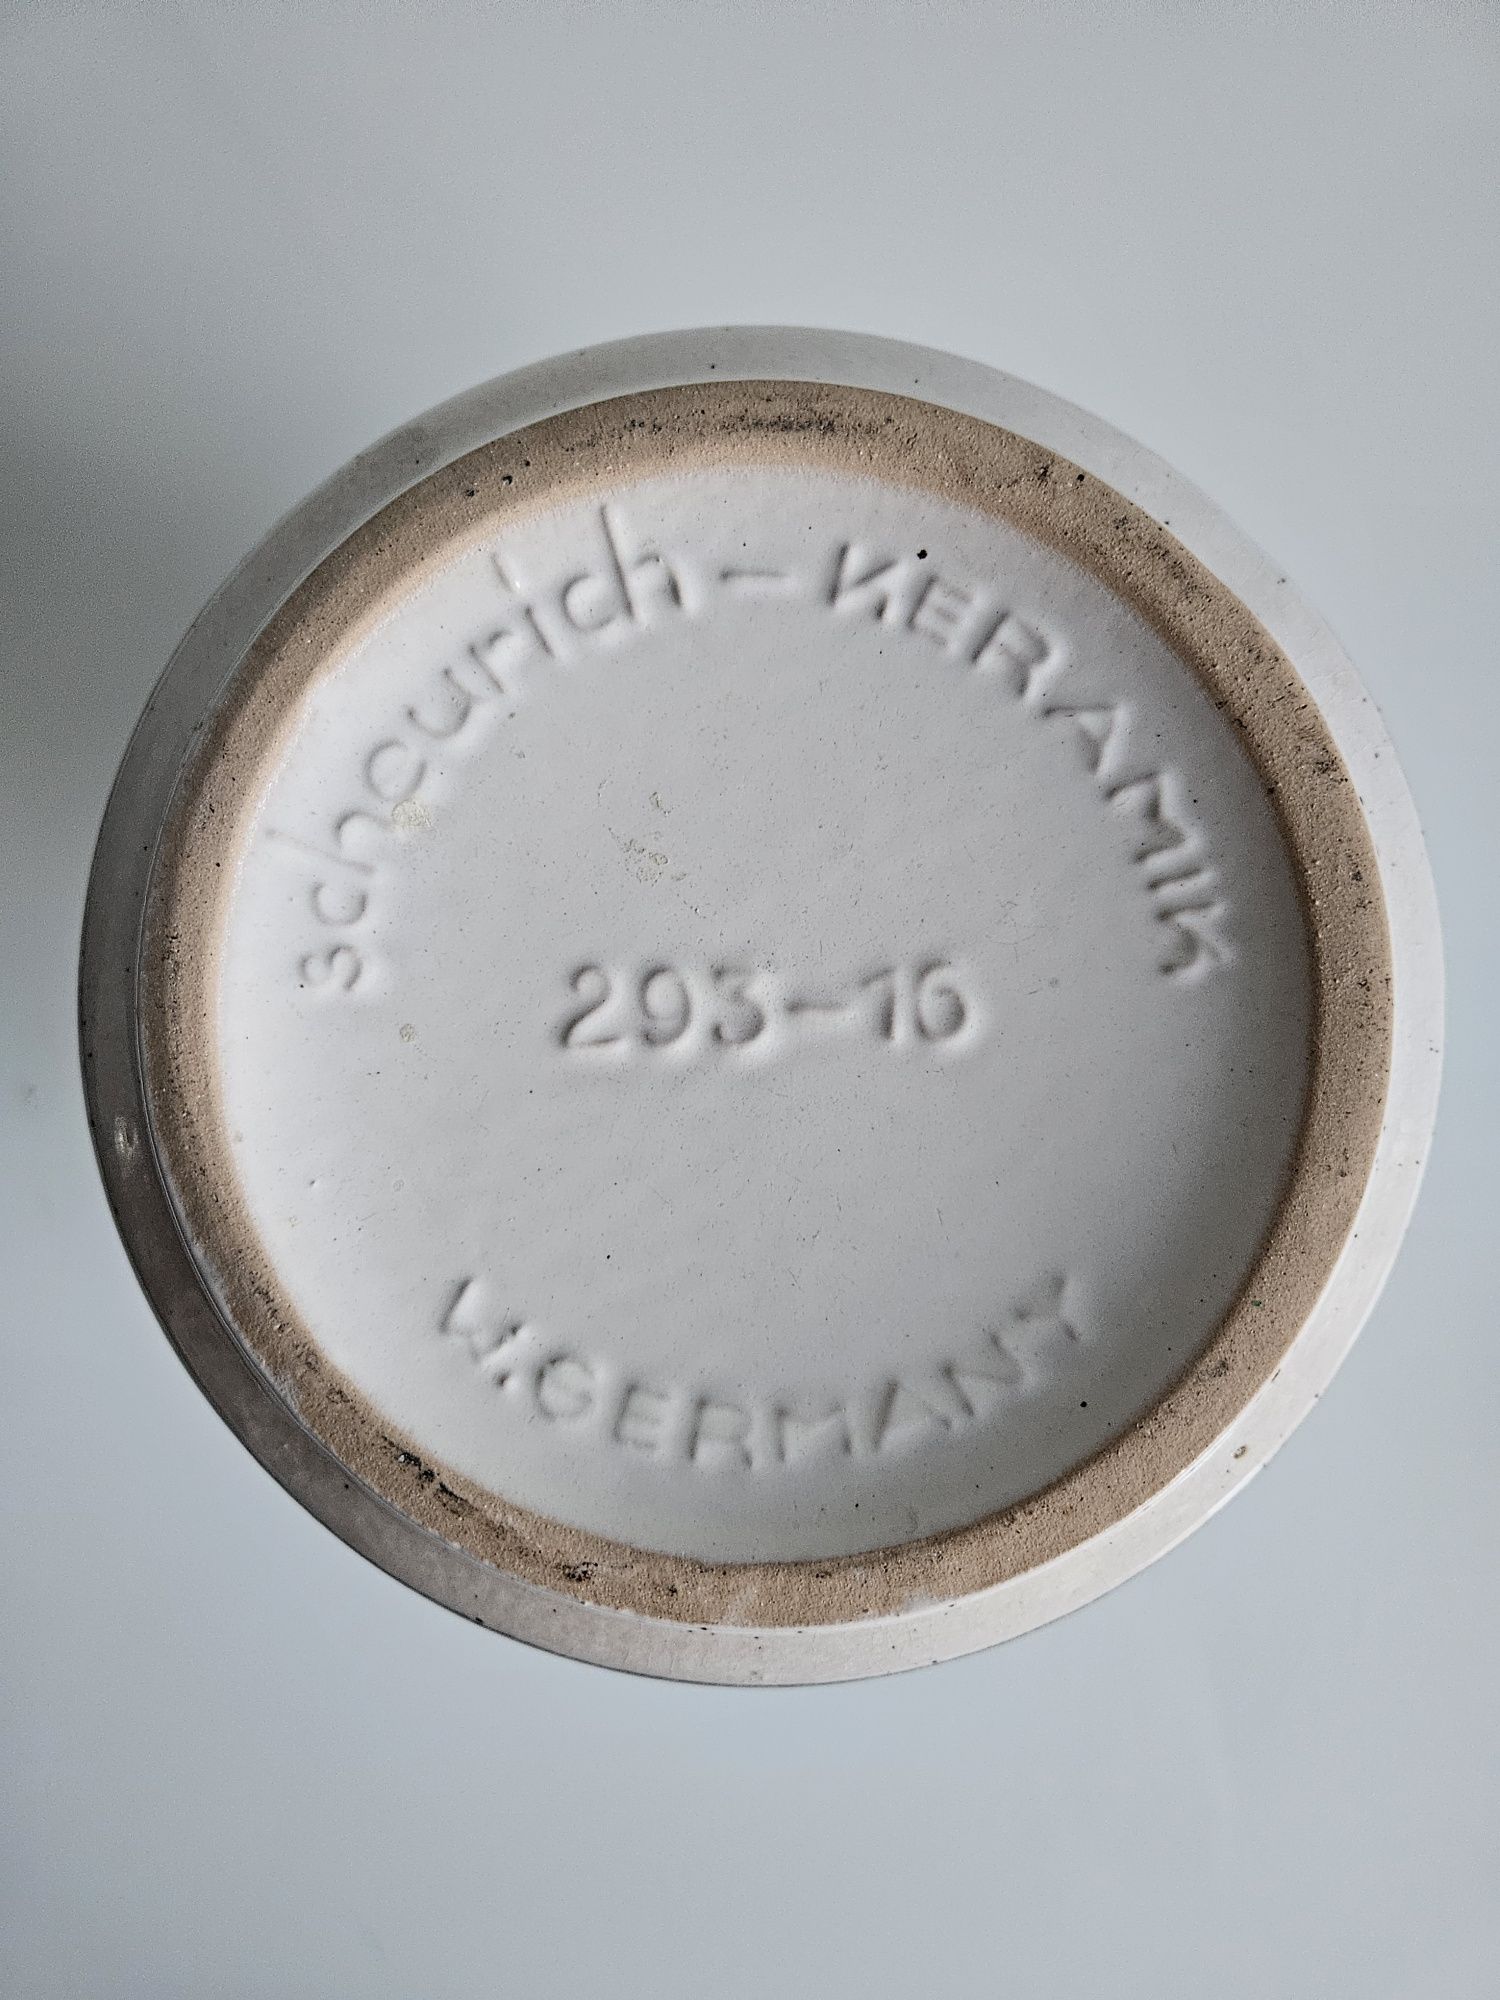 Wazon ceramiczny Scheurich 203-16 w.germany